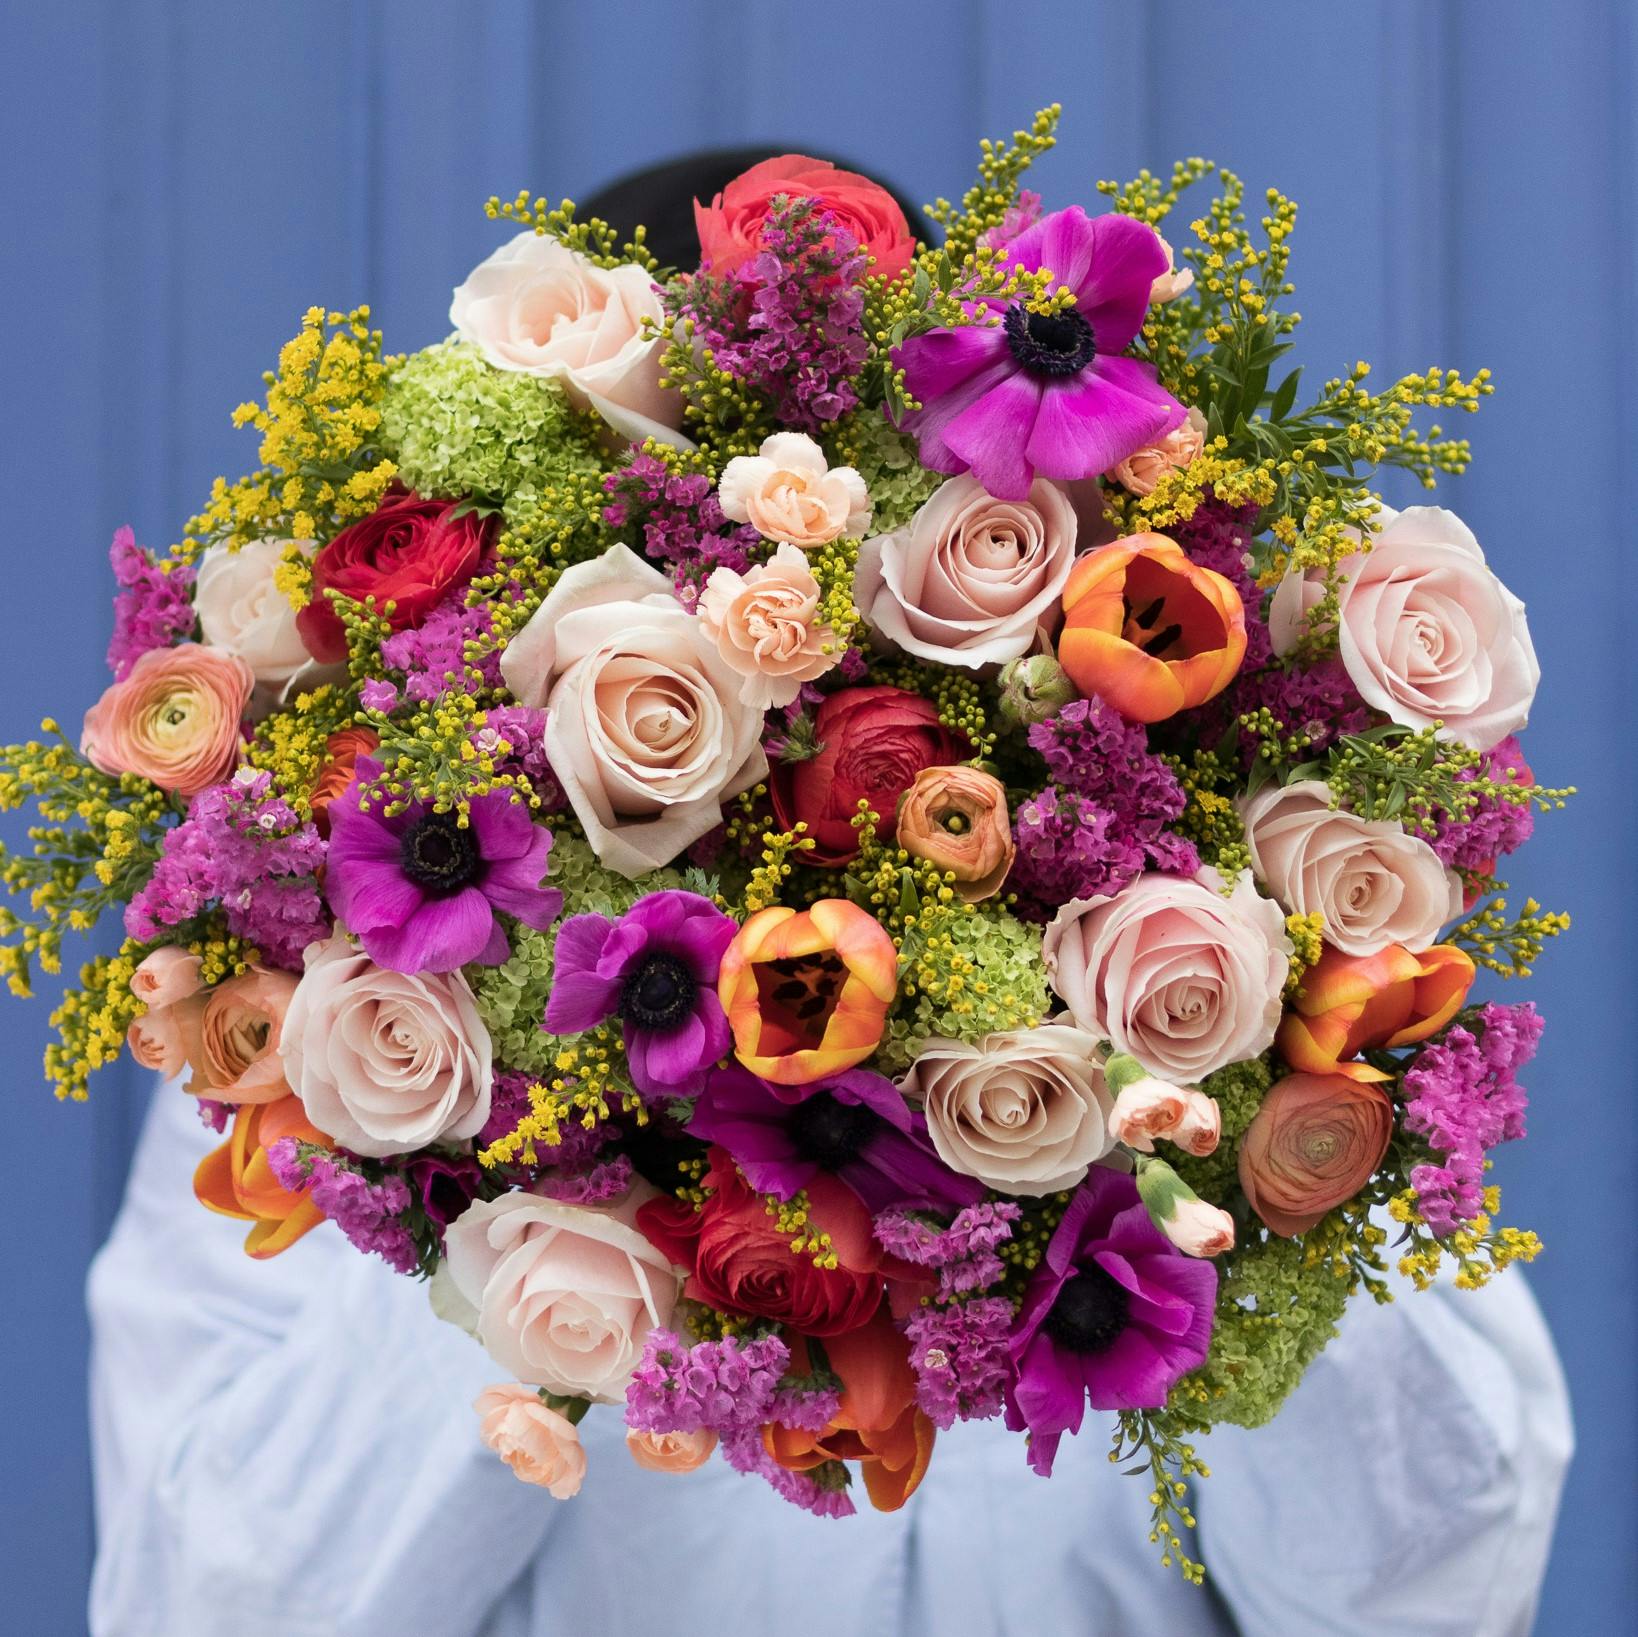 Quelles fleurs offrir pour un mariage ?